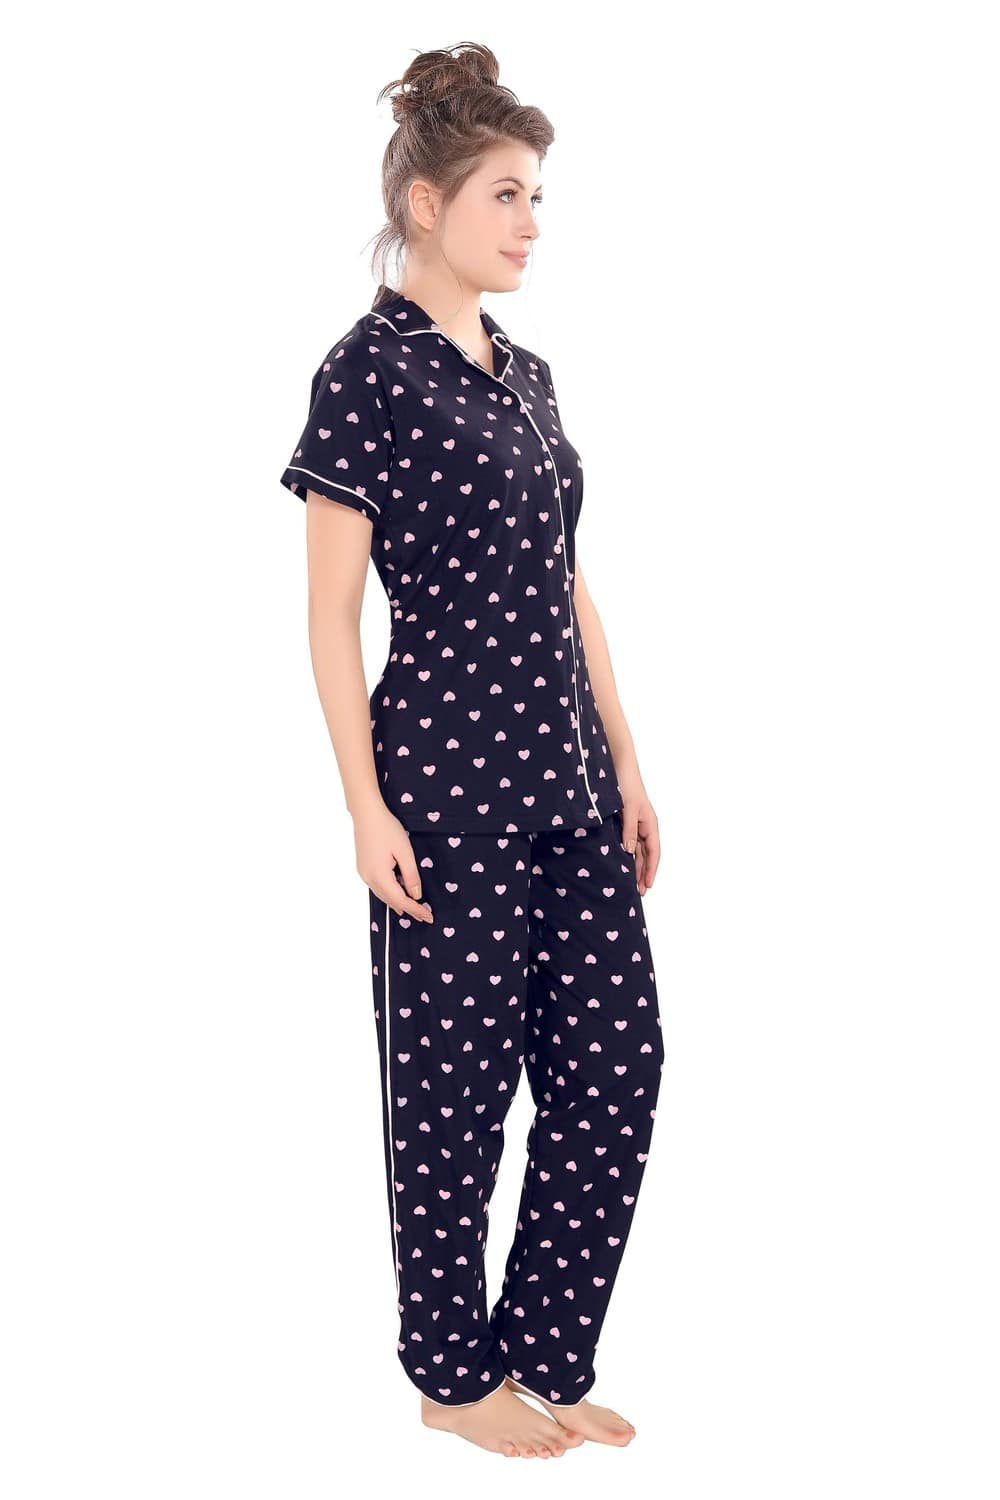 Pierre Donna Women's Cotton Pajama set With Pants - Women Sleepwear Navy Blue Color - Dealz Souq